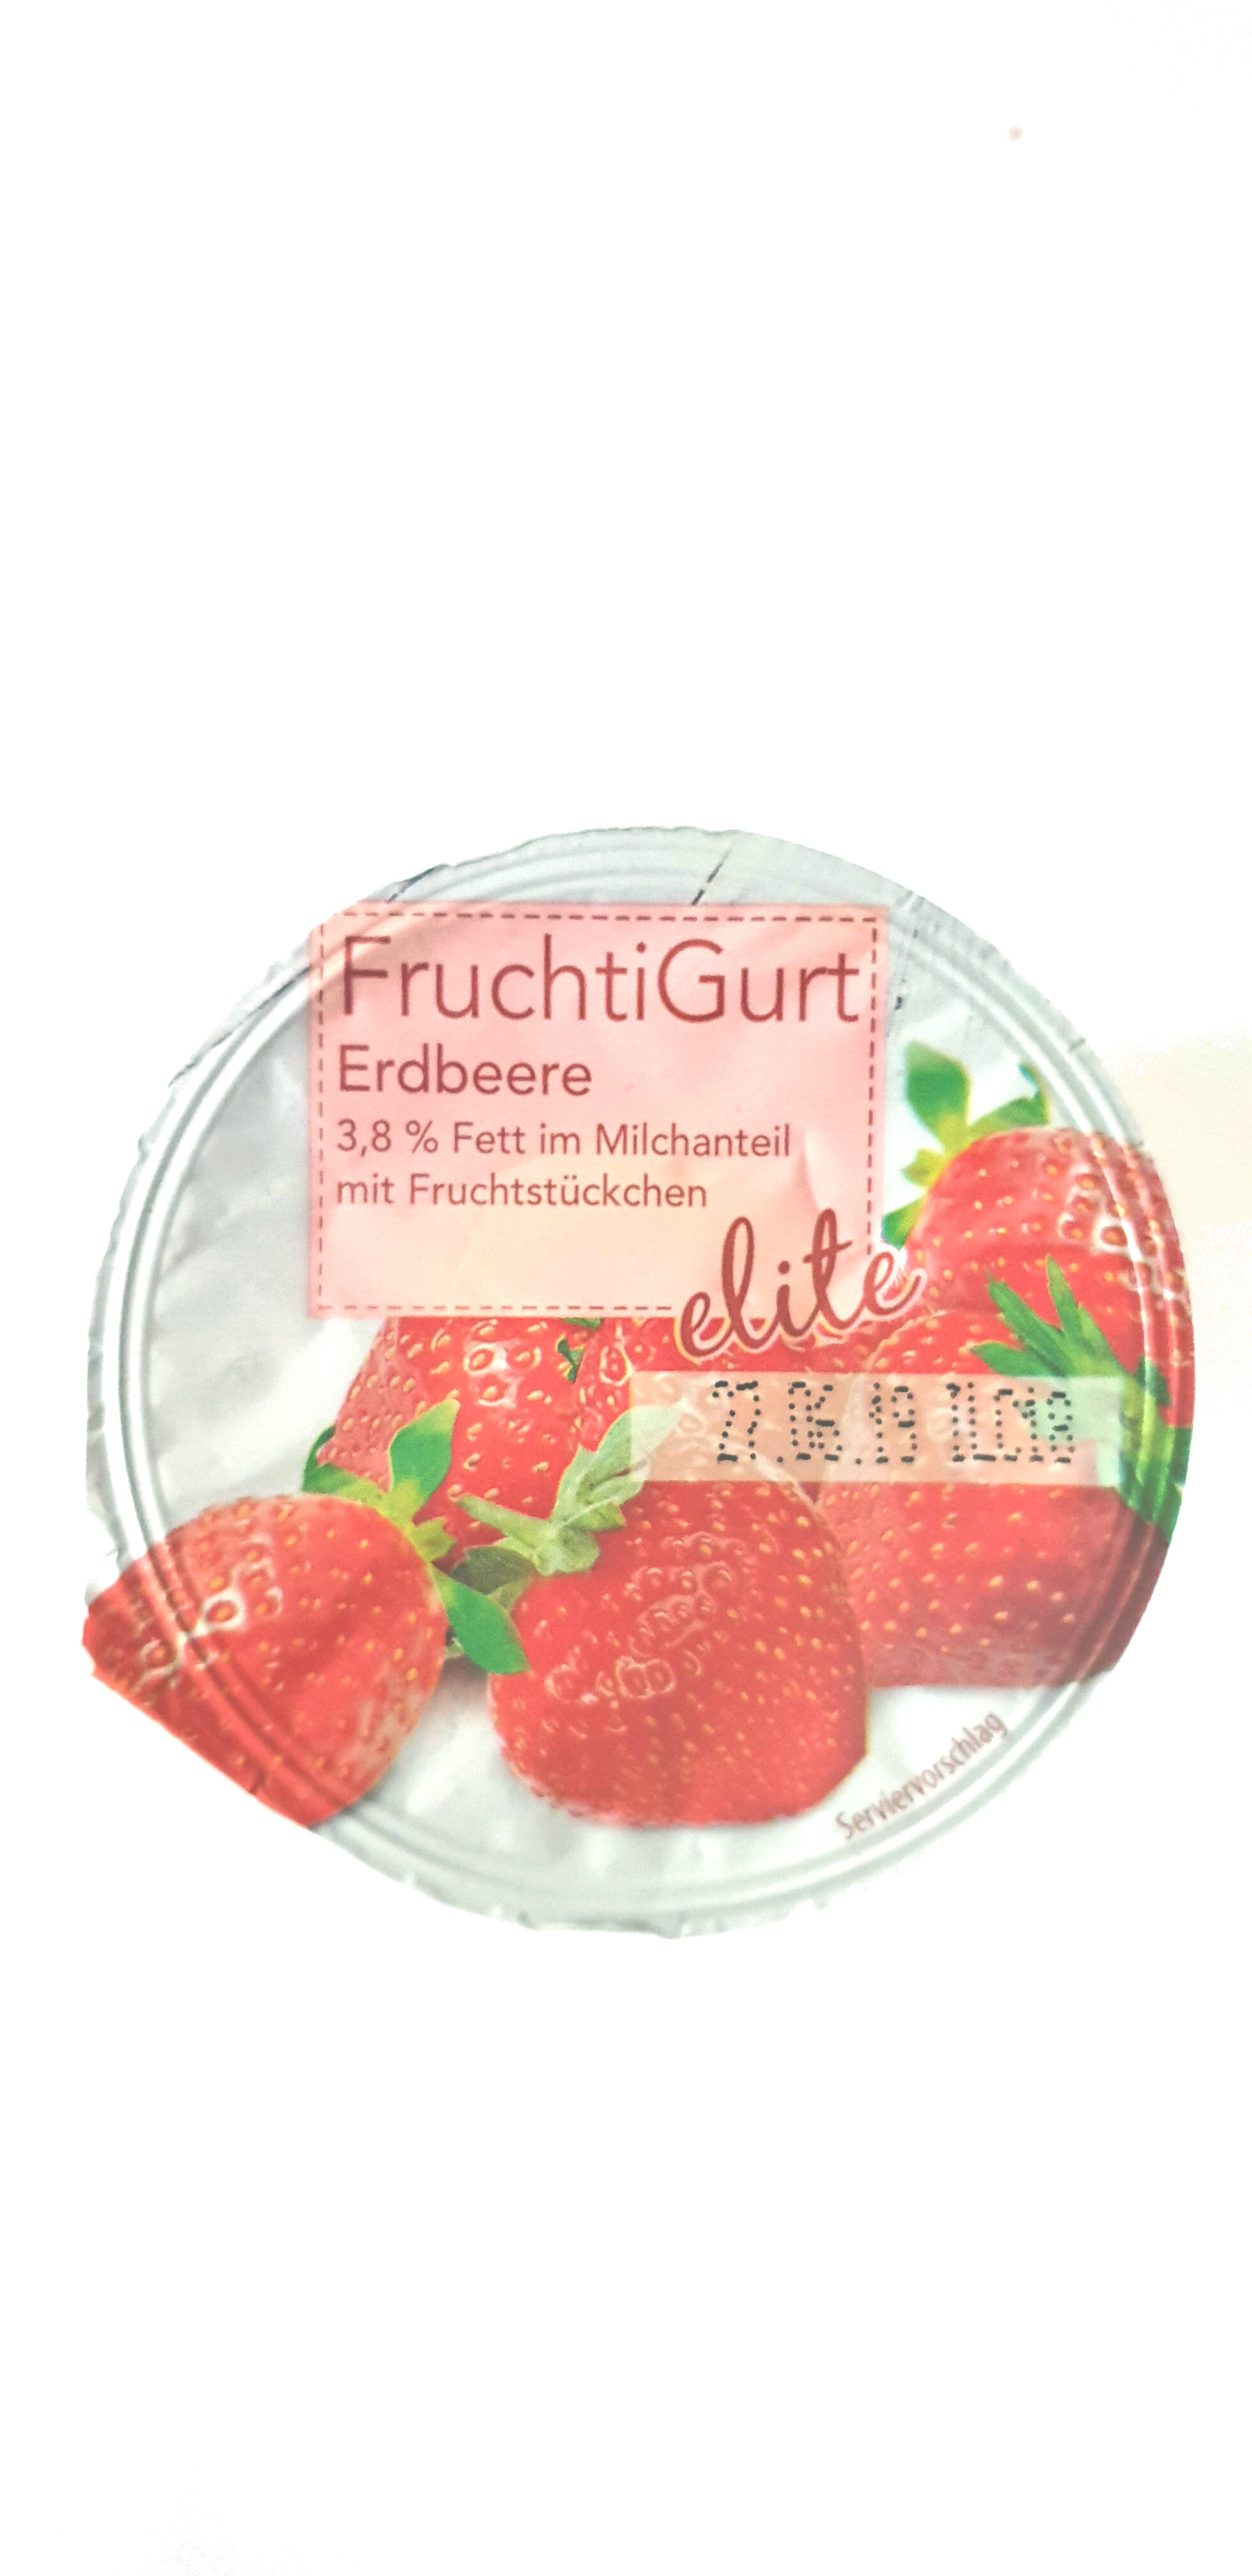 FruchtiGurt - Erdbeere - Product - de